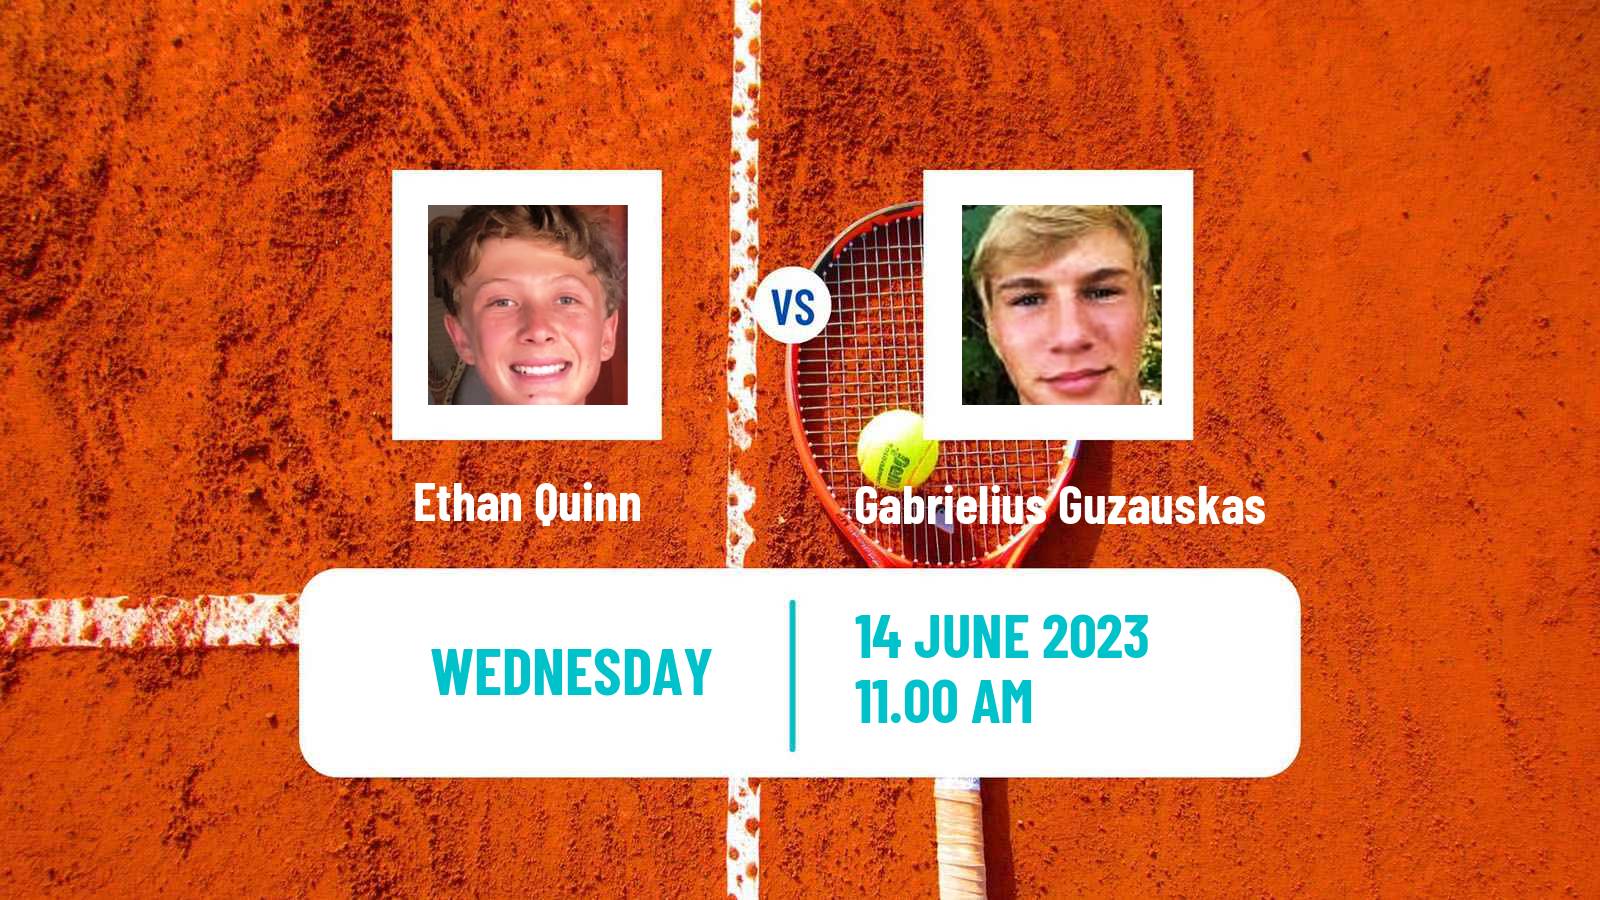 Tennis ITF M25 Wichita 2 Men Ethan Quinn - Gabrielius Guzauskas